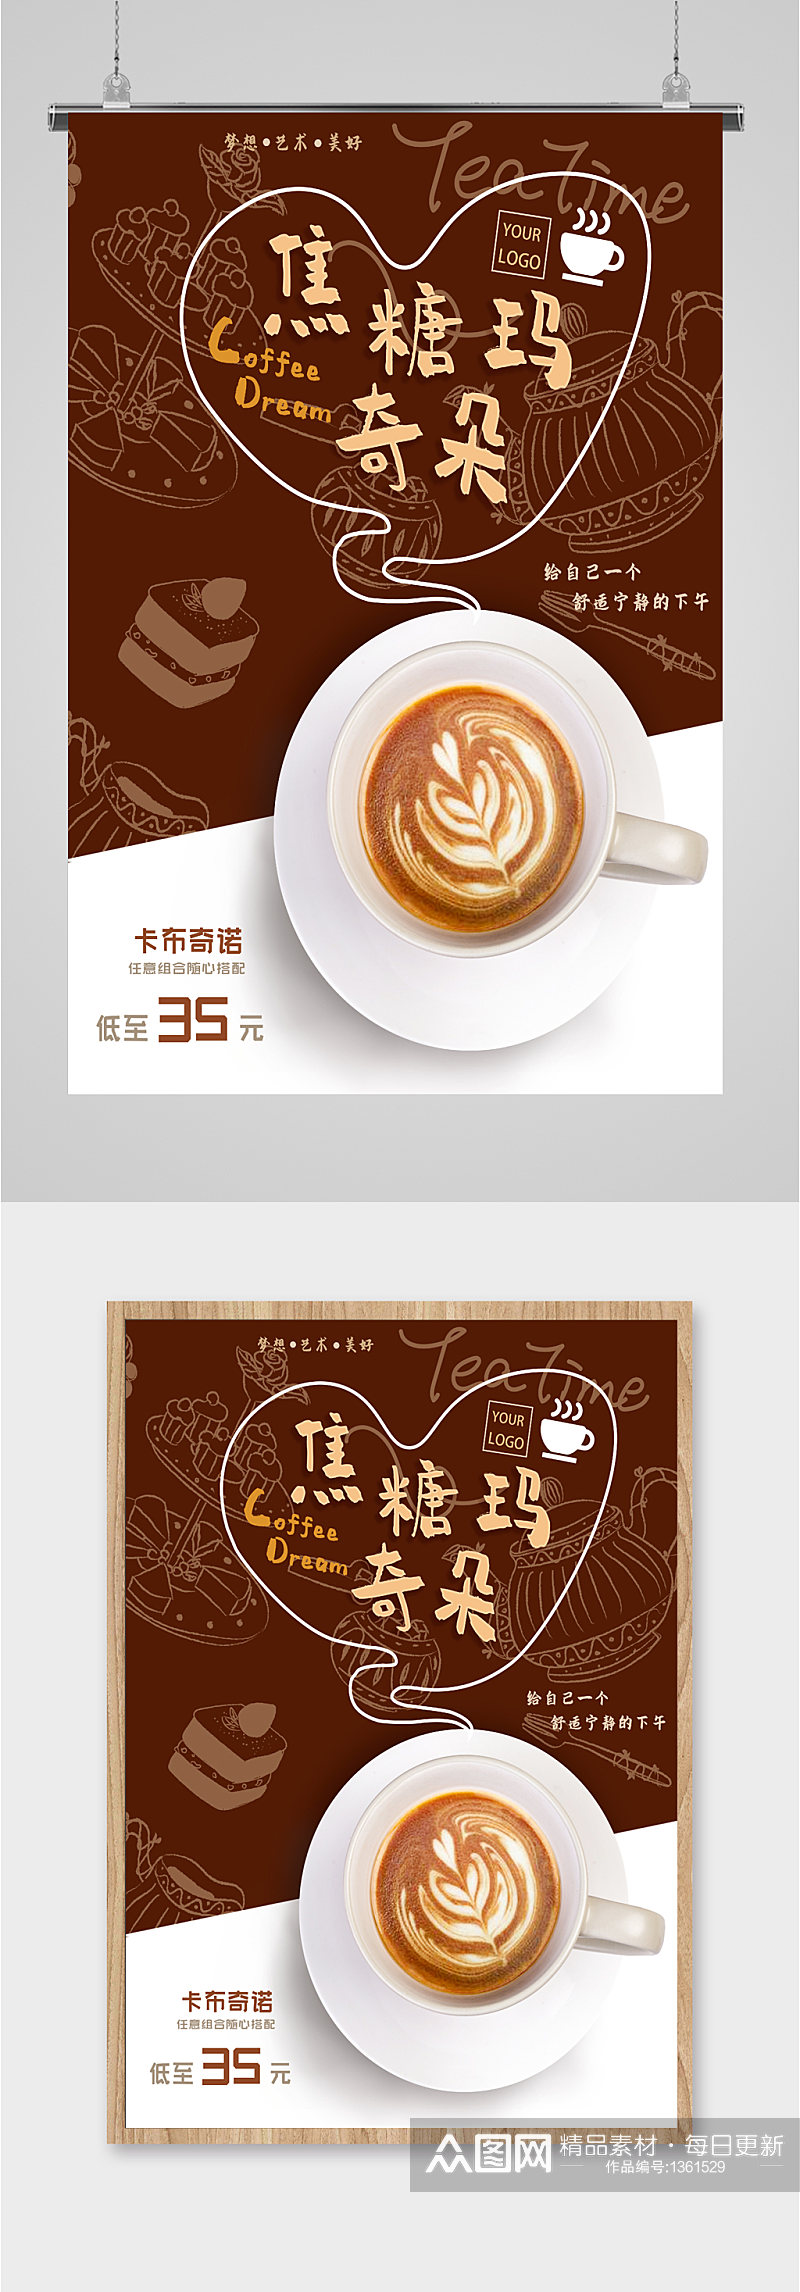 咖啡饮品咖啡馆海报展板素材